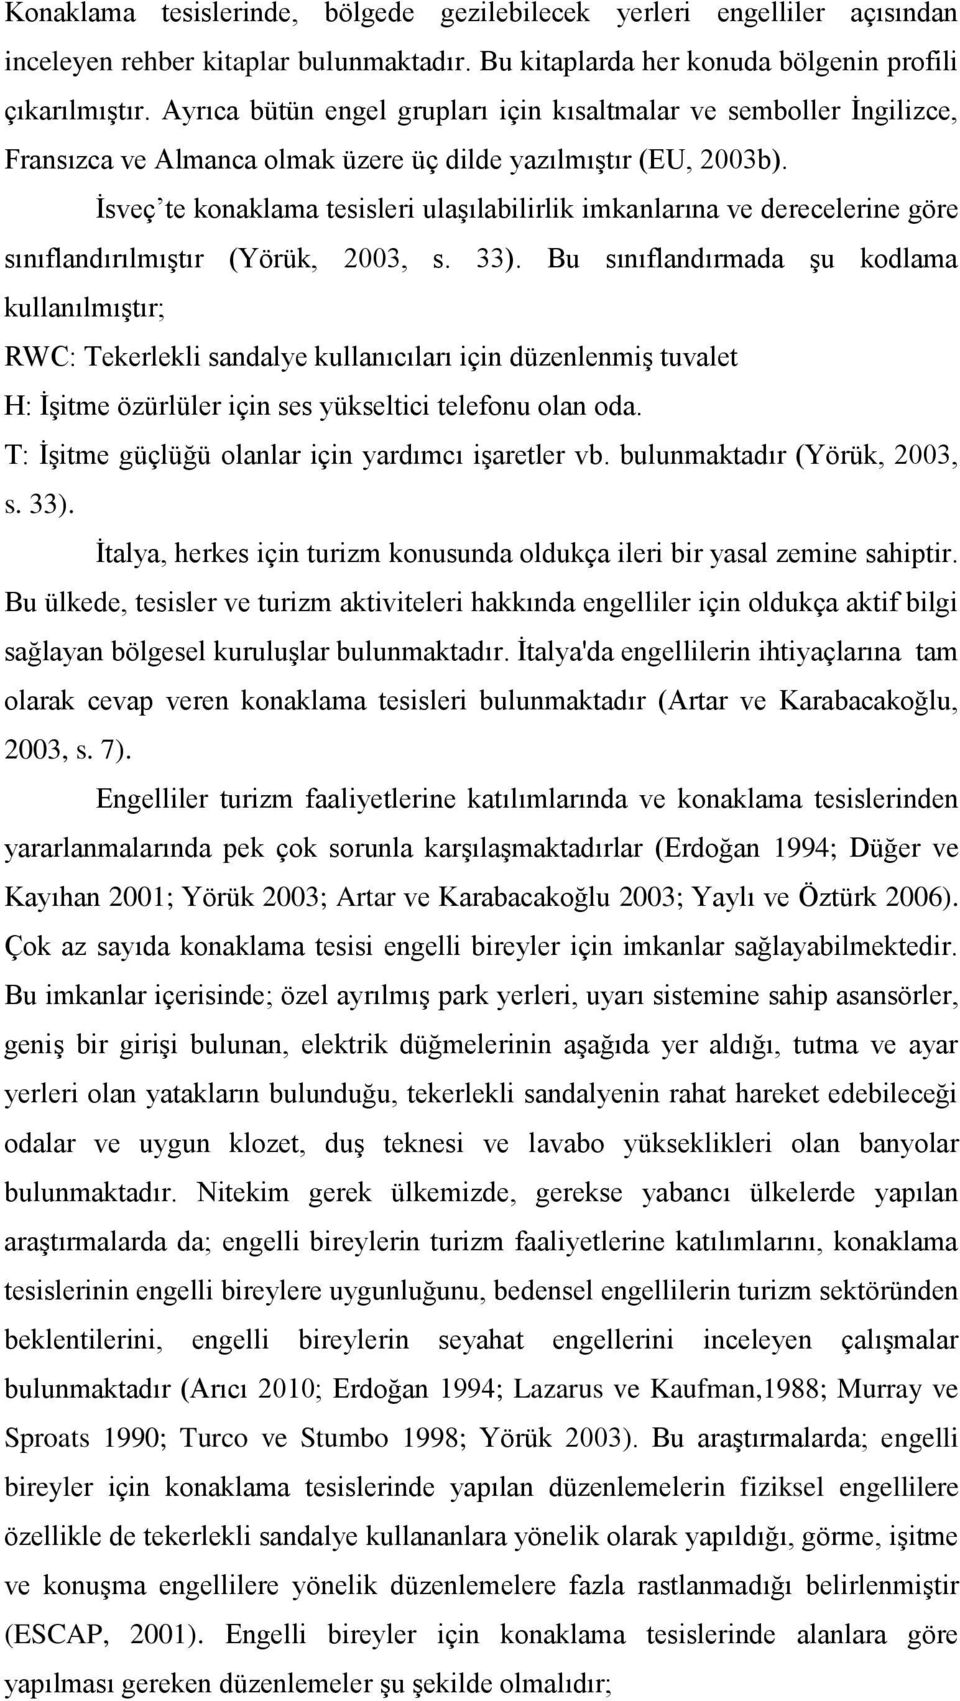 İsveç te konaklama tesisleri ulaşılabilirlik imkanlarına ve derecelerine göre sınıflandırılmıştır (Yörük, 2003, s. 33).